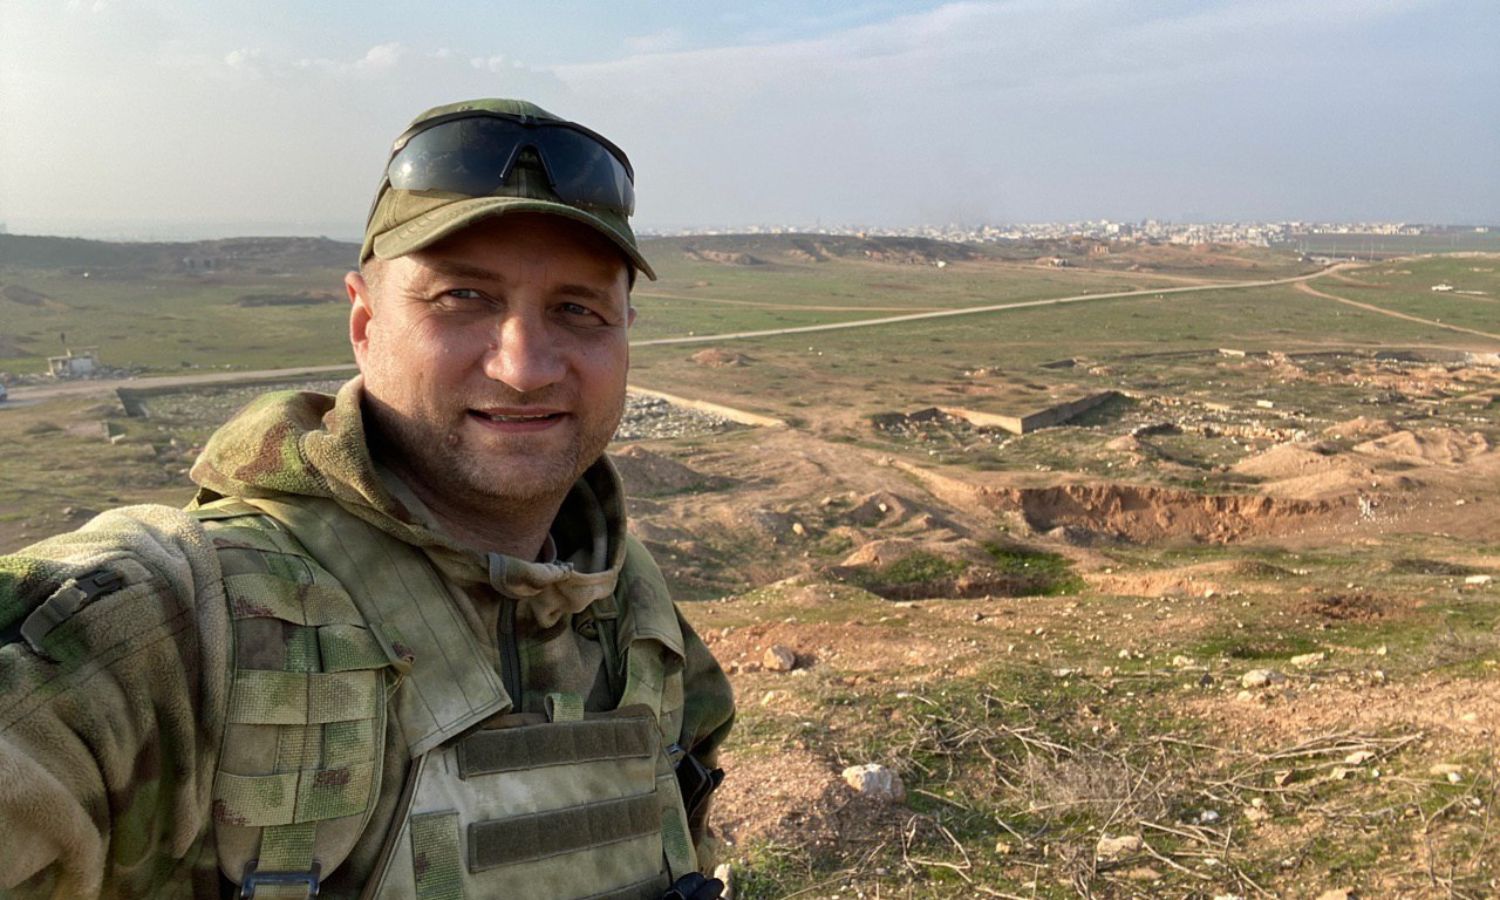 المقاتل والمراسل الحربي الروسي أوليغ بلوخين في قرية مرديخ بريف إدلب الجنوبي الشرقي- 5 من شباط 2020 (قناة المراسل في "تلجرام")